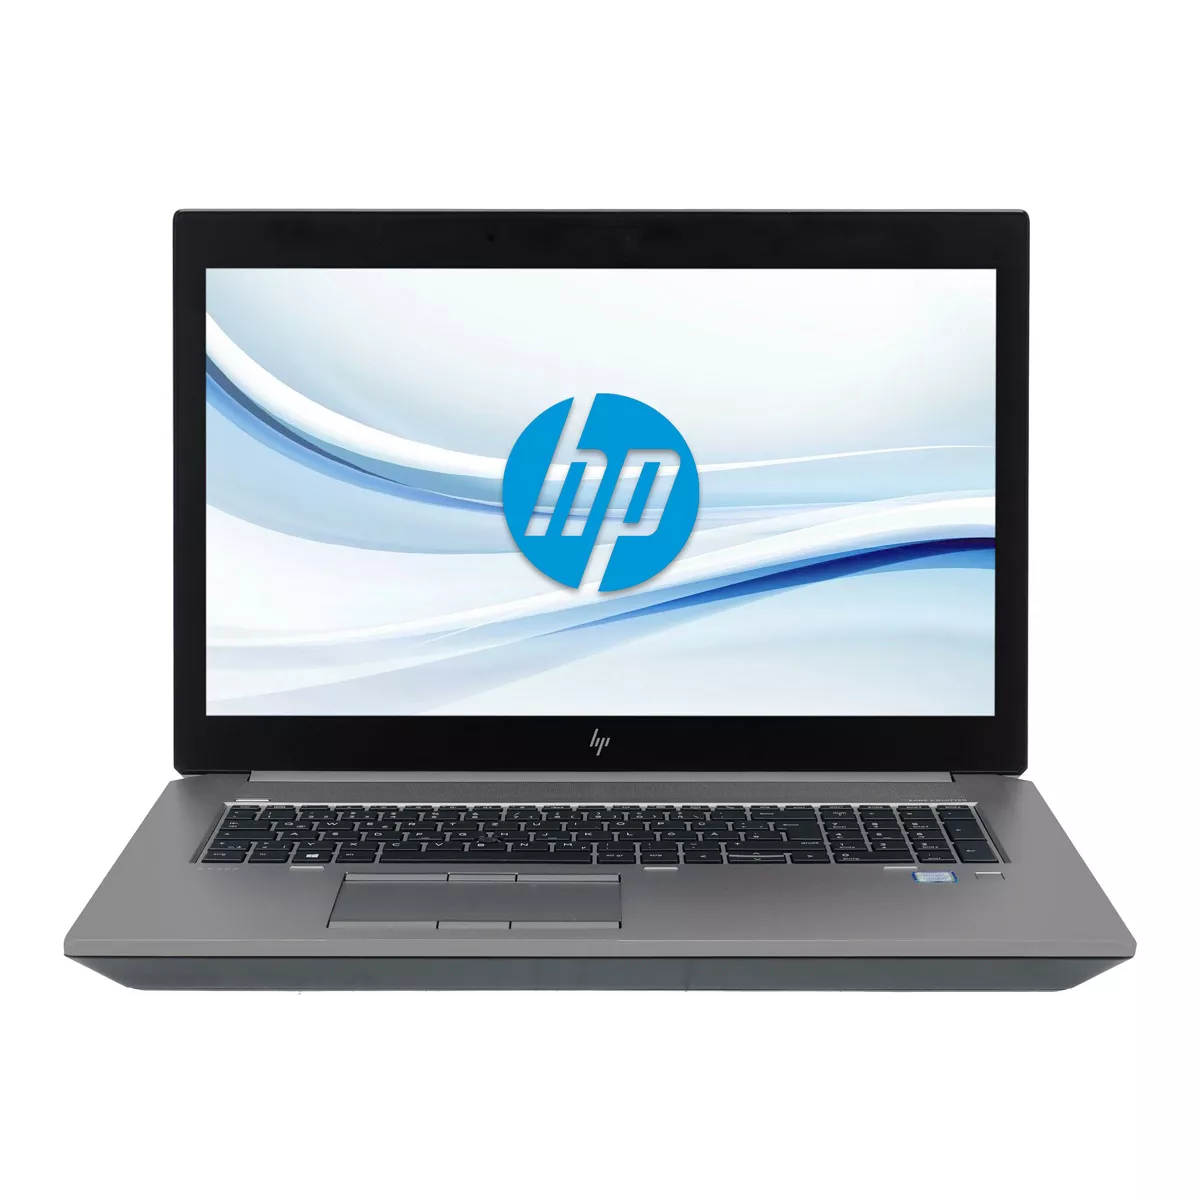 HP ZBook 17 G6 Core i7 9850H nVidia Quadro RTX 3000M 500 GB M.2 nVME SSD Webcam A+